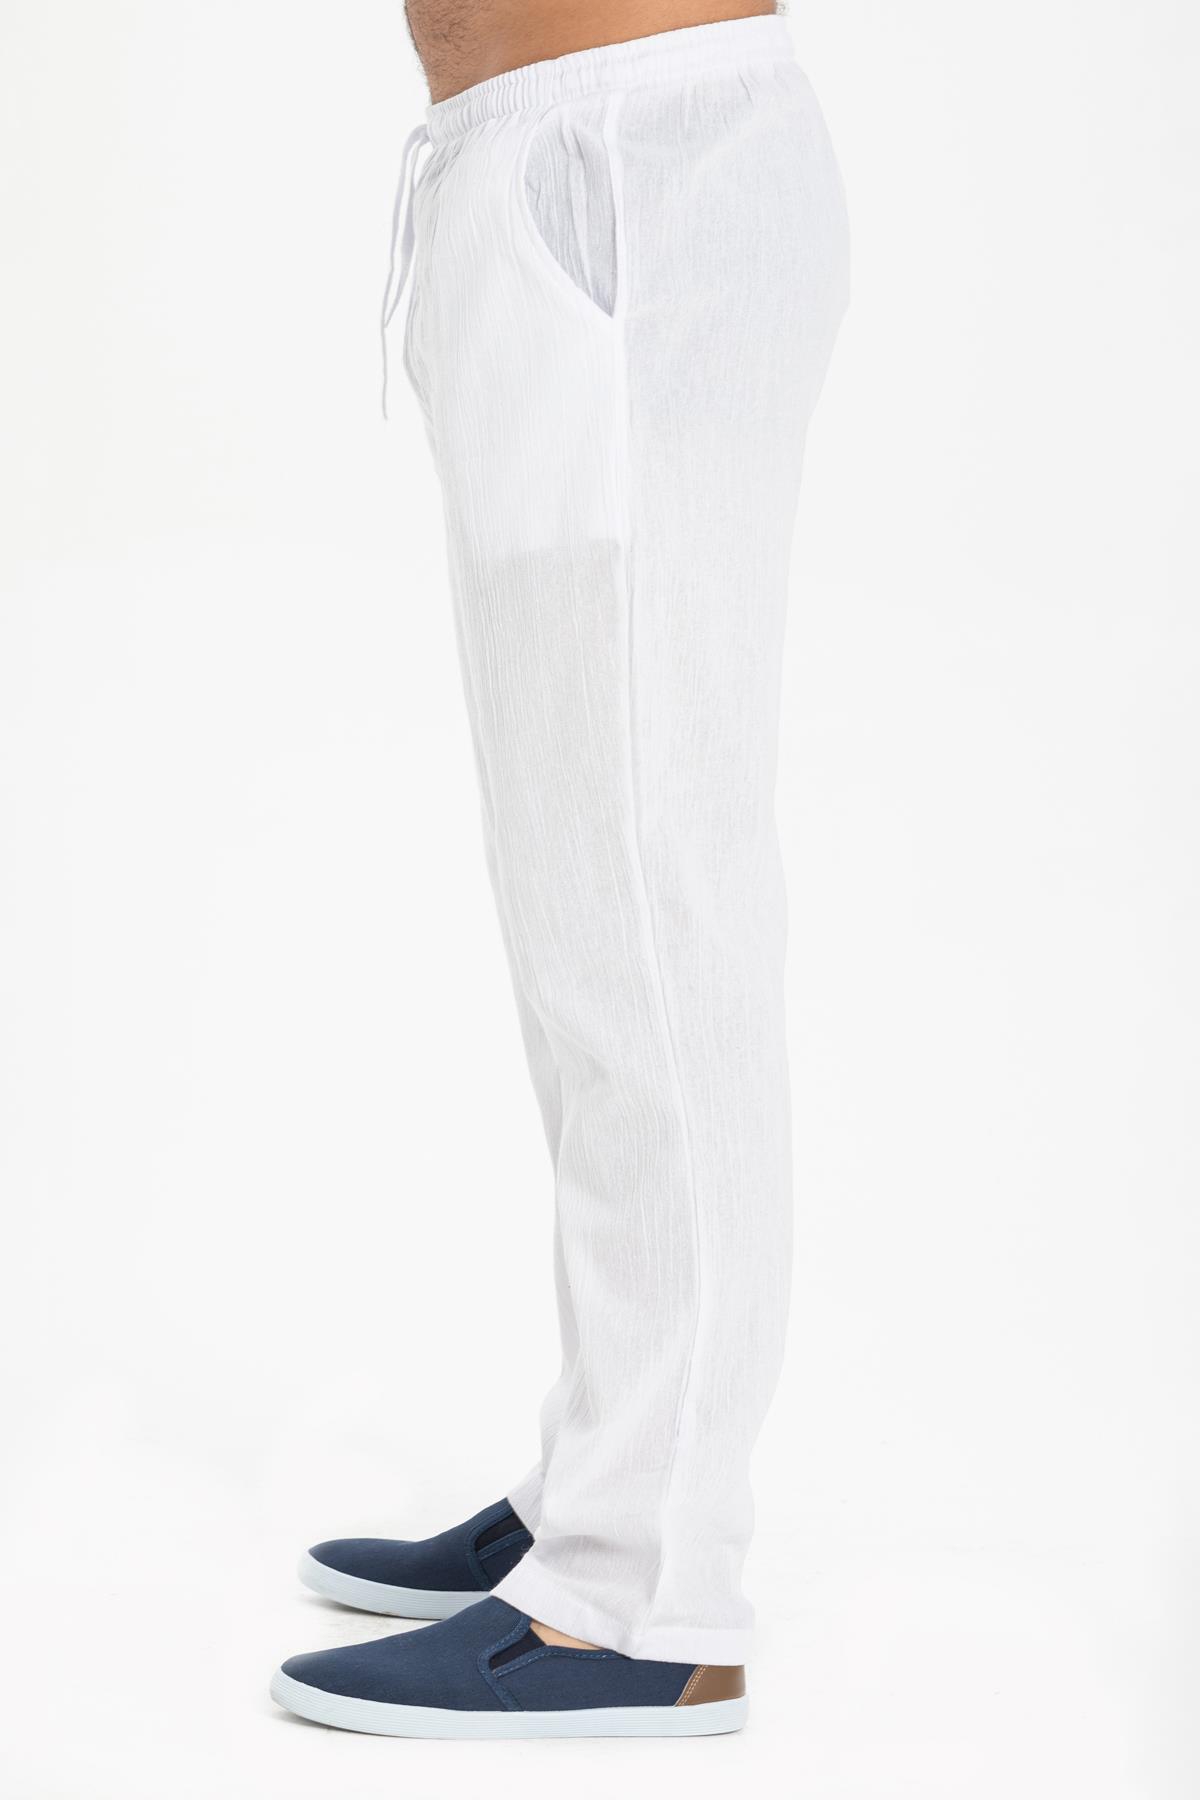 Şile Bezi Cepli Erkek Pantolon Beyaz | silemoda.com